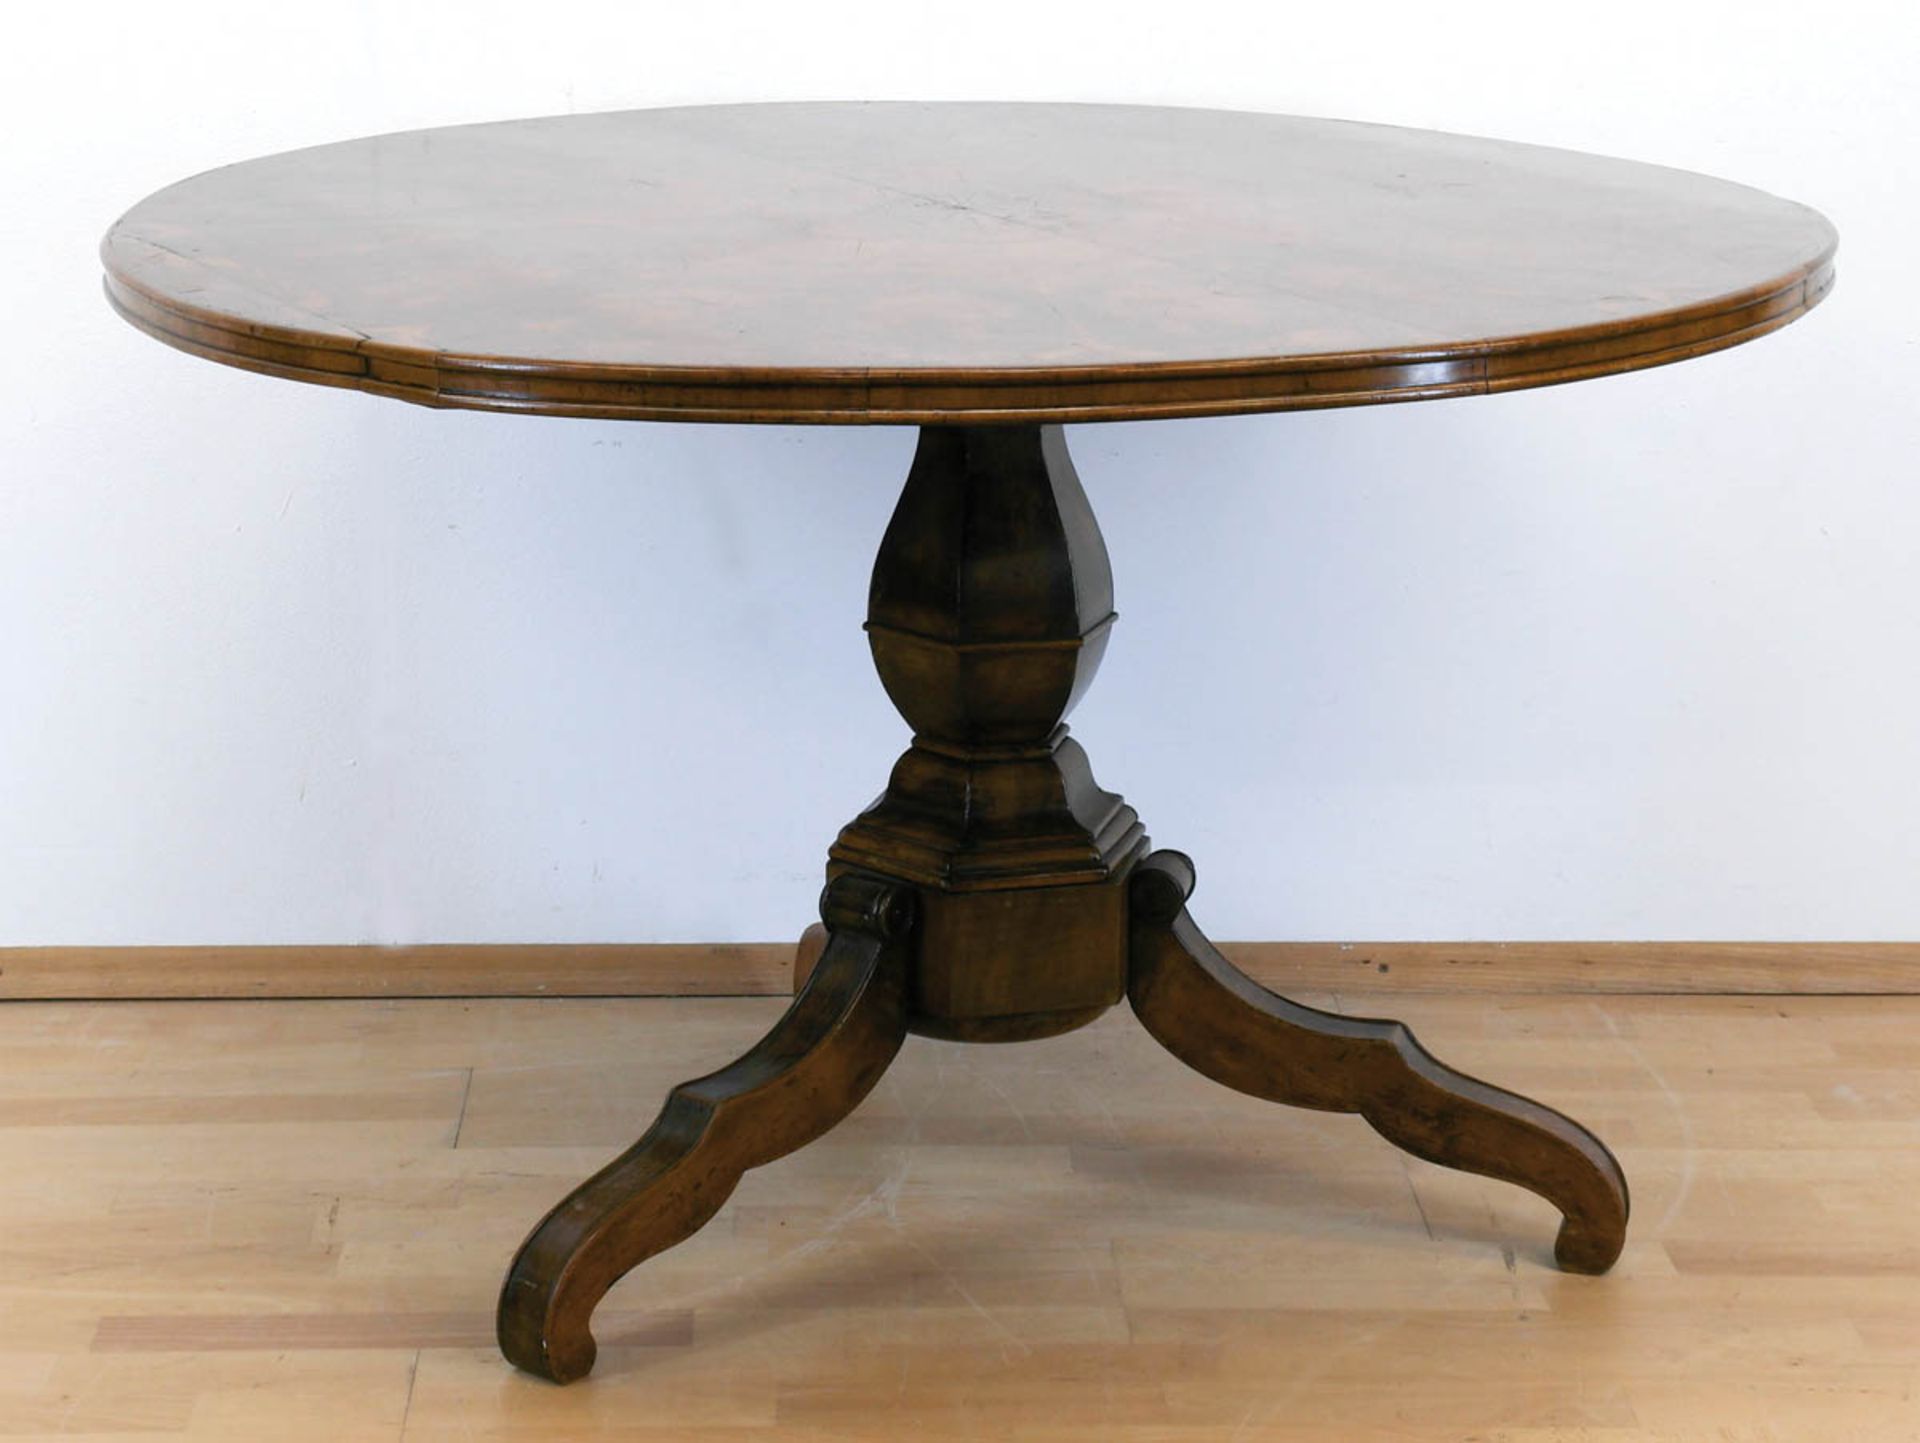 Biedermeier-Tisch, Nußbaum furniert, 6-kantige Balustersäulen auf 3 geschwungenen Füßen, runde Plat